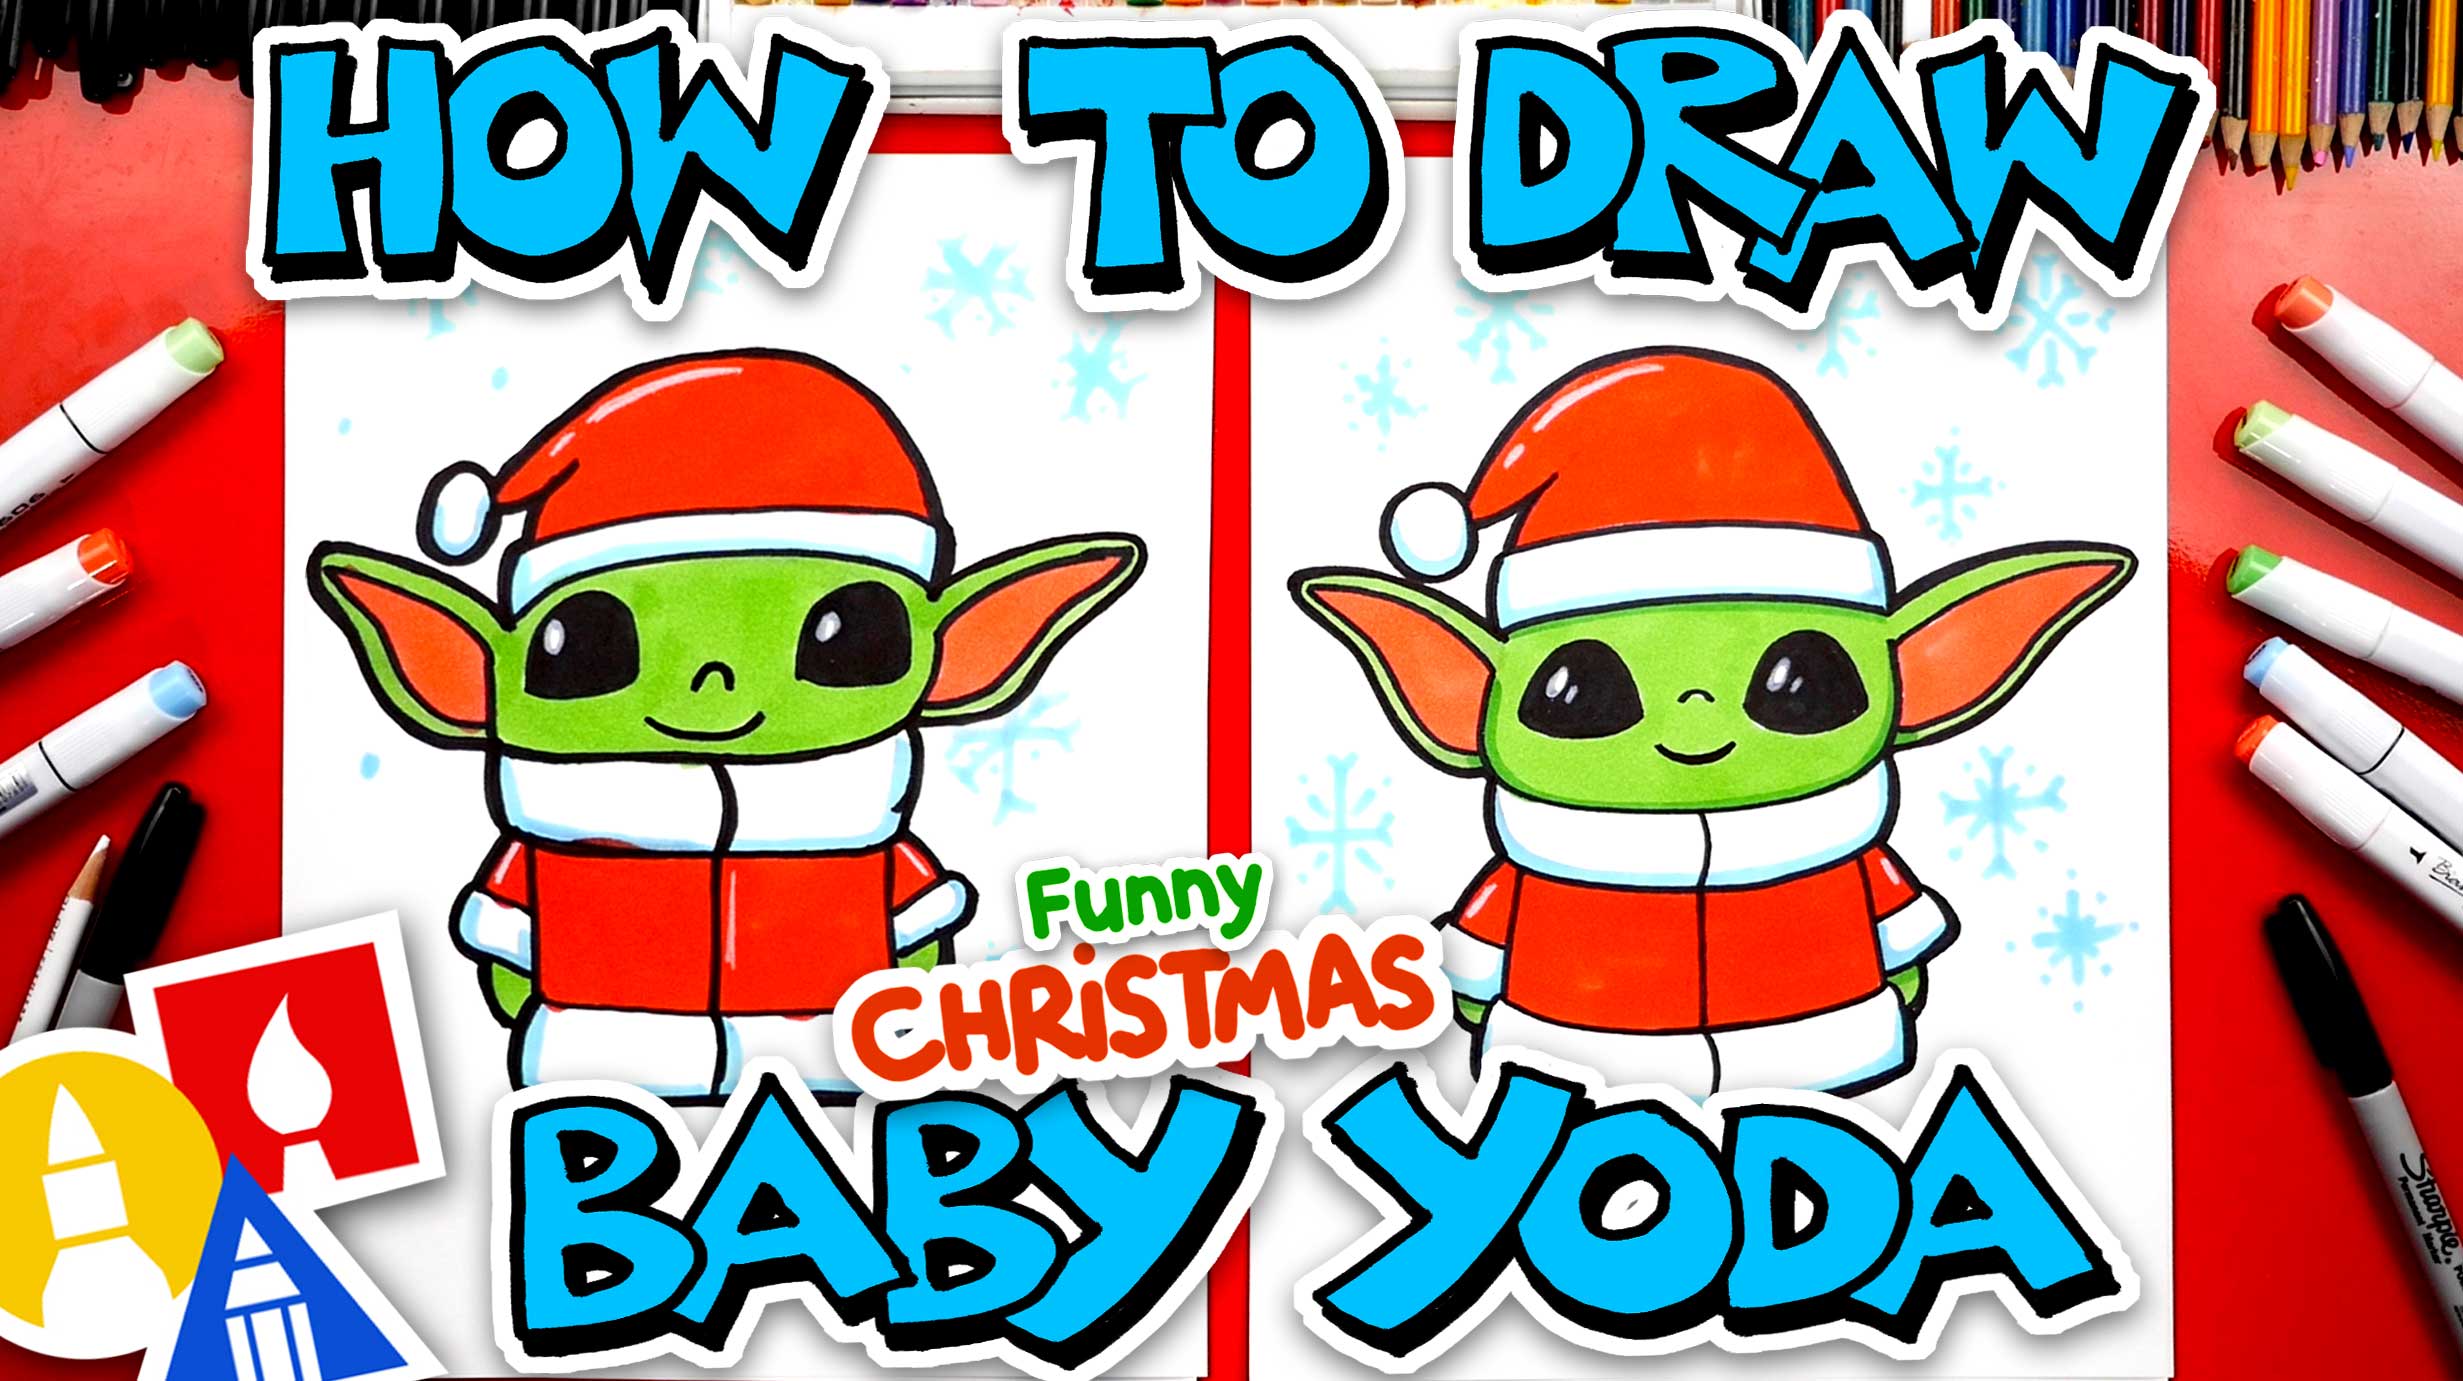 Baby Yoda Drawing - Codona.Art - Digital Art, People & Figures, Other  People & Figures, Other - ArtPal